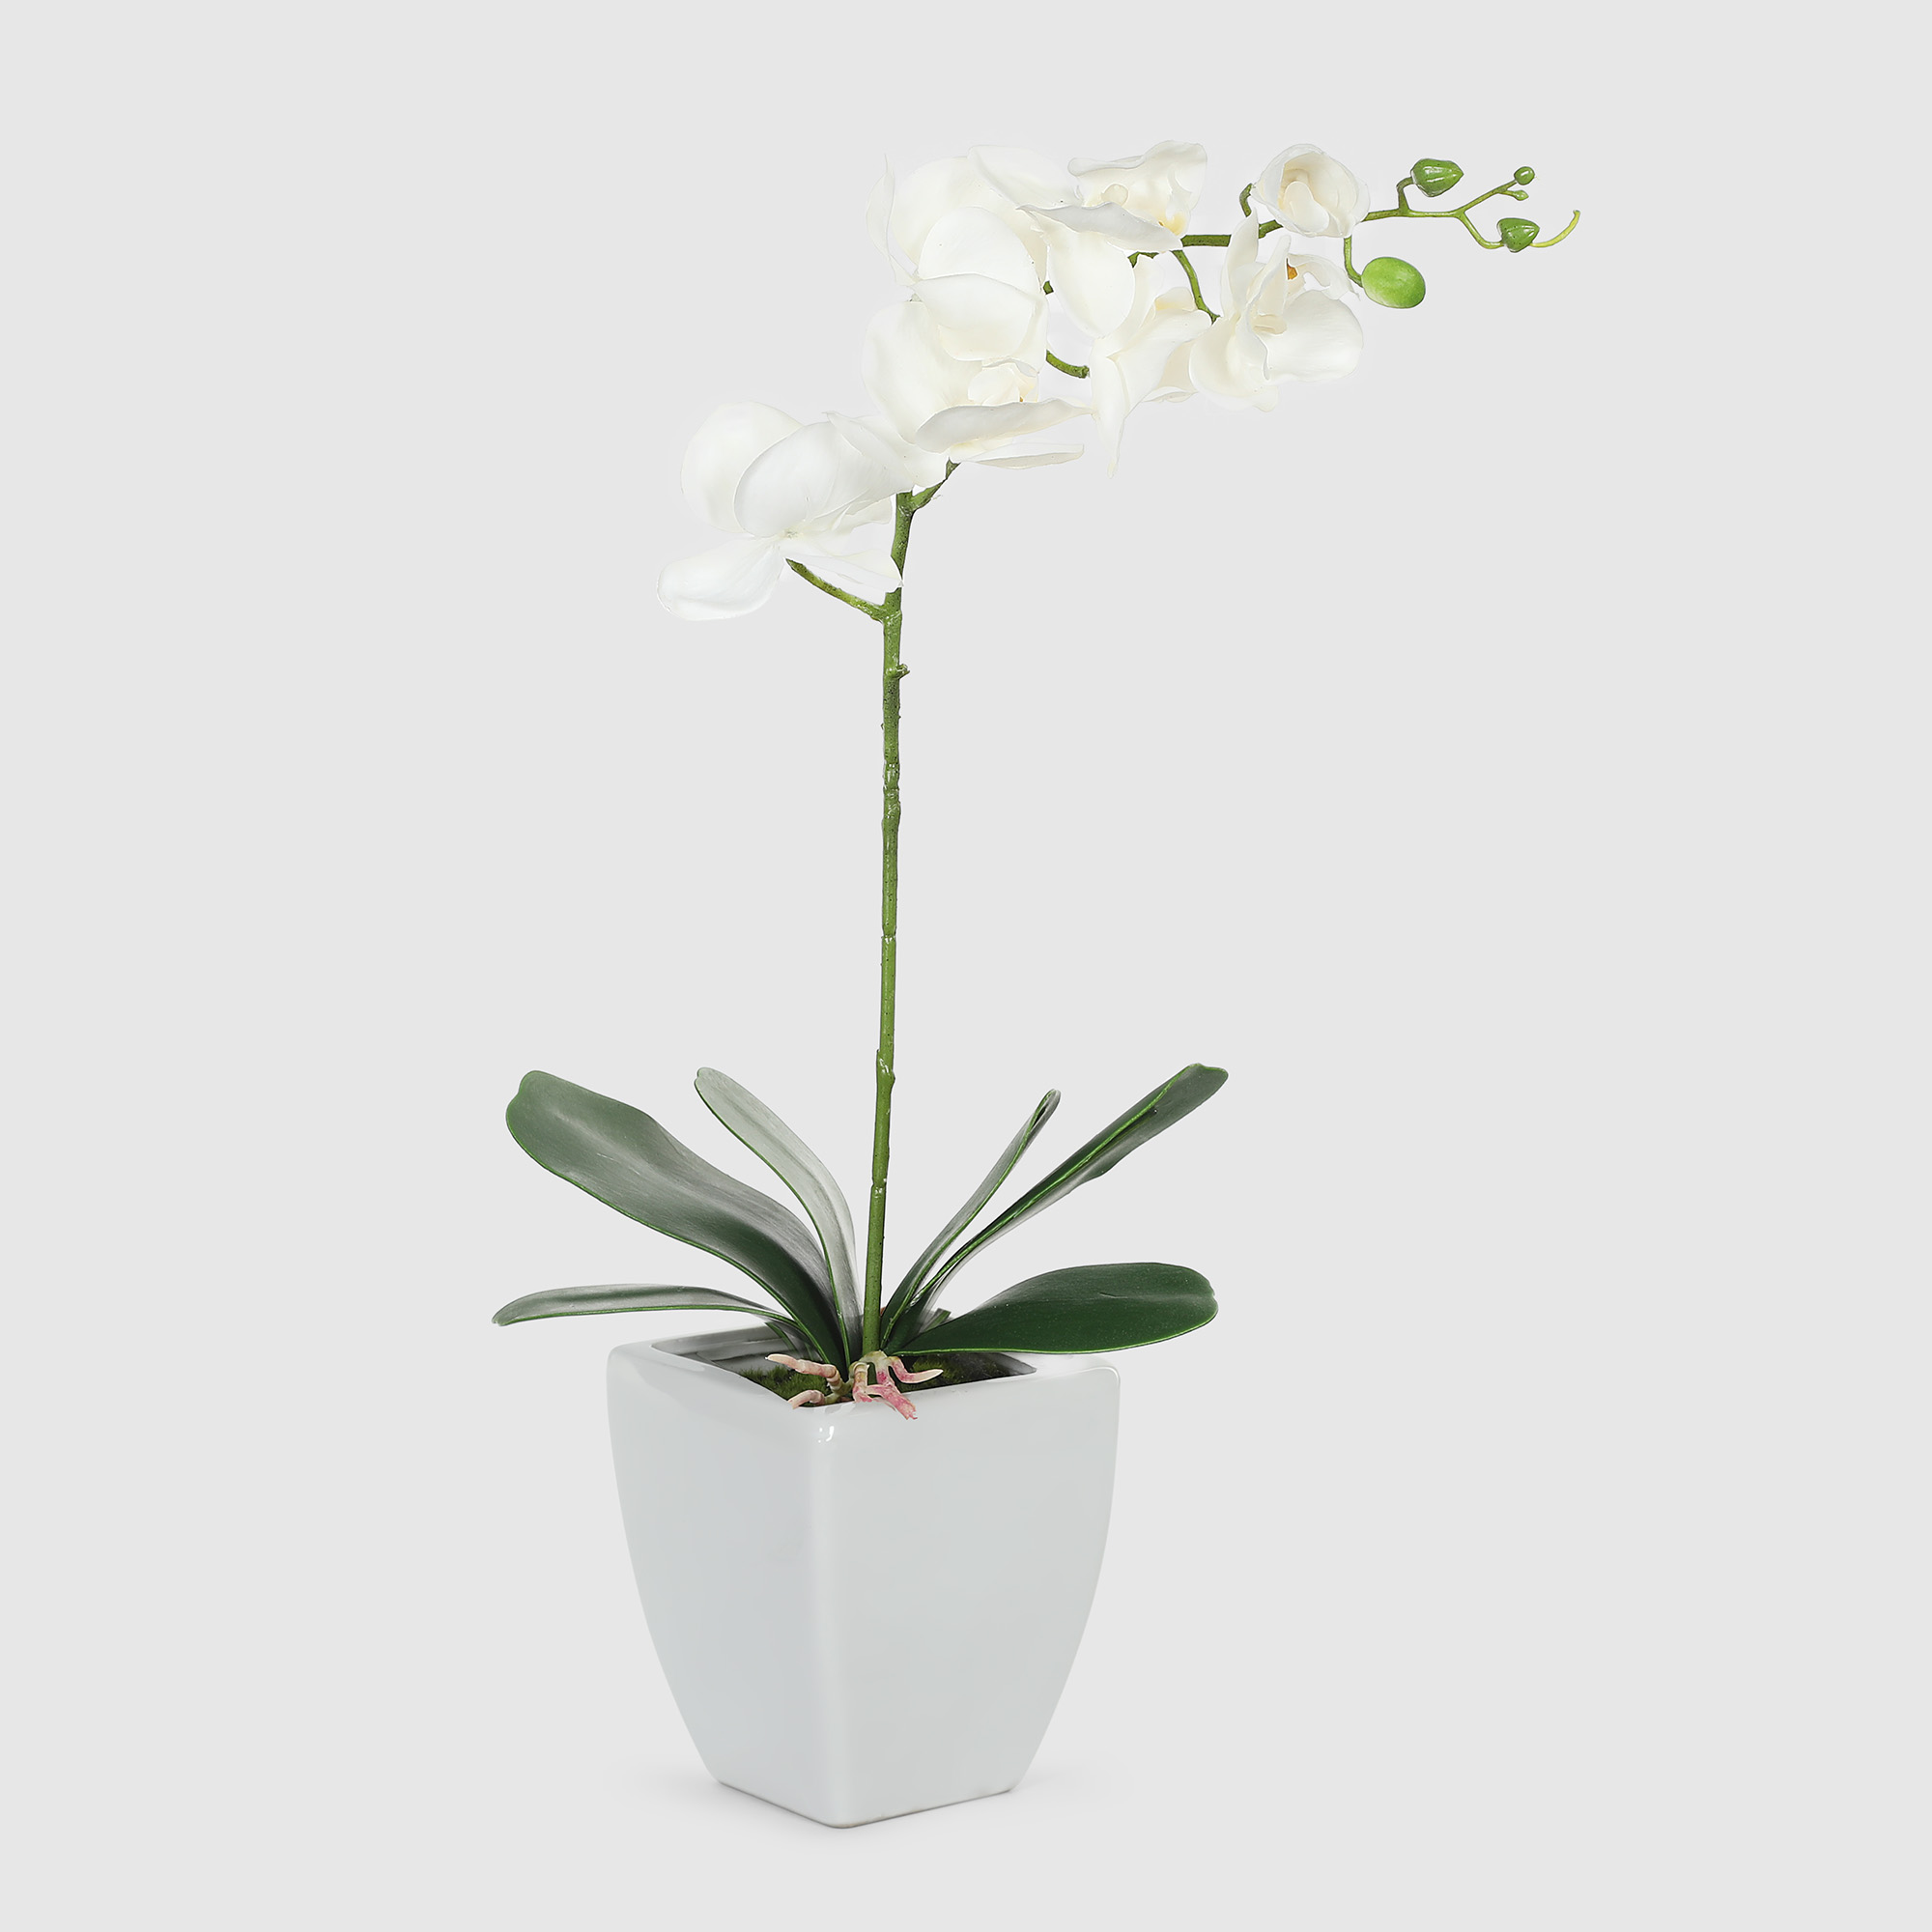 Орхидея в белом кашпо Конэко-О 554_10159_185 60 см орхидея фаленопсис конэко о в кашпо 70 см